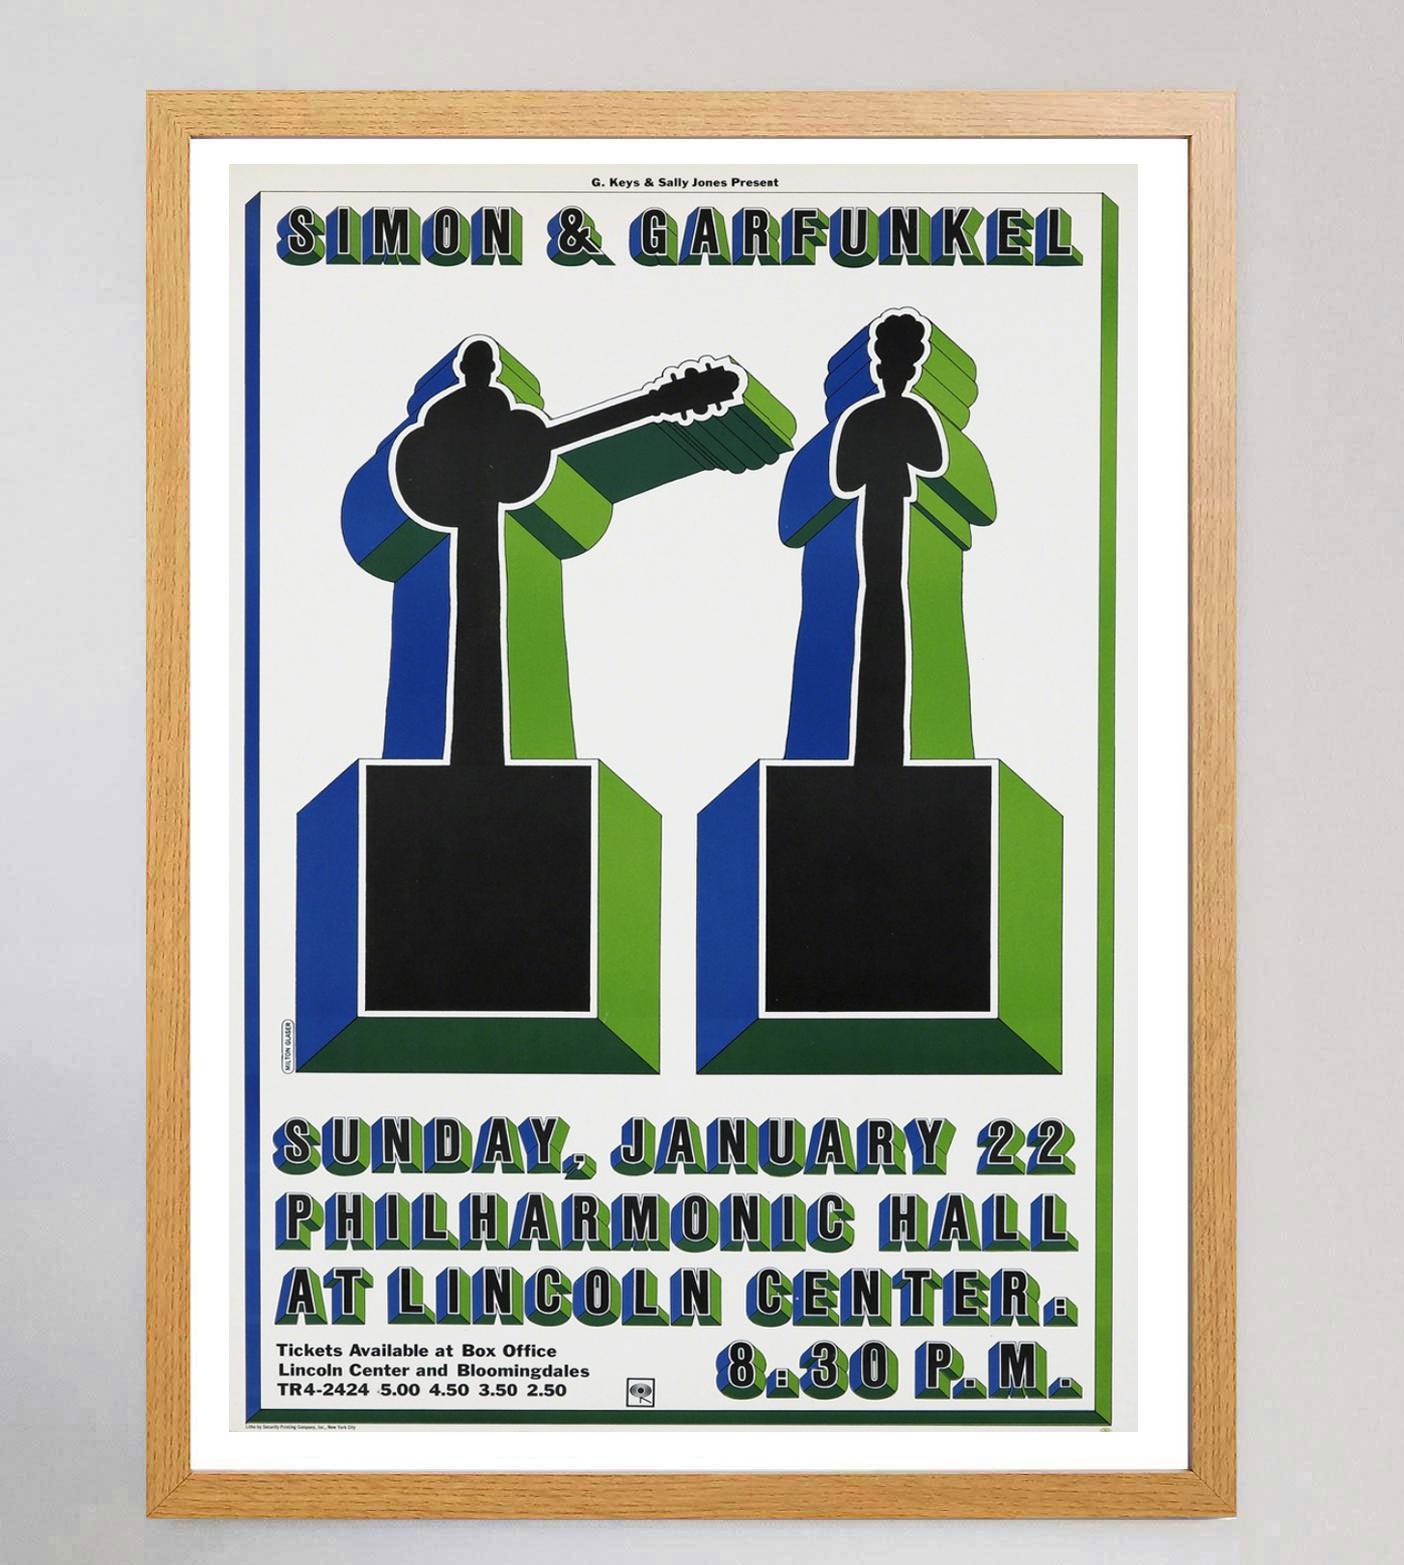 Belle affiche lithographique créée en 1967 pour promouvoir le spectacle de Simon & Garfunkel au Philharmonic Hall du Lincoln Center à New York. Le concert a eu lieu le 22 janvier 1967 à 20h30, juste après la sortie de l'album 